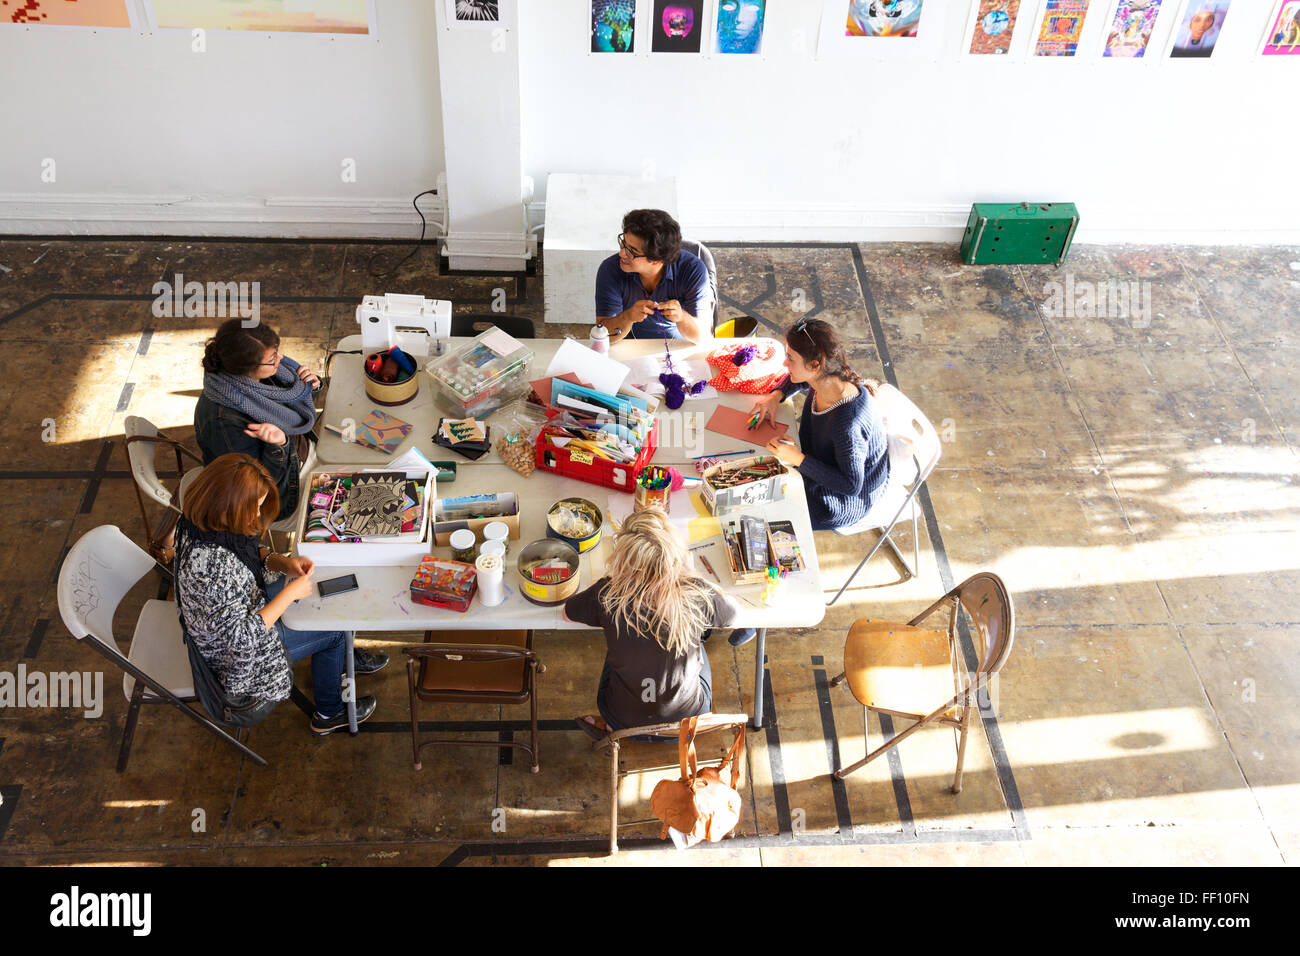 Cinq personnes assis autour d'une table avec des fournitures d'artisanat dans un espace ensoleillé lumineux, chacun travaillant sur son projet tranquillement. Banque D'Images